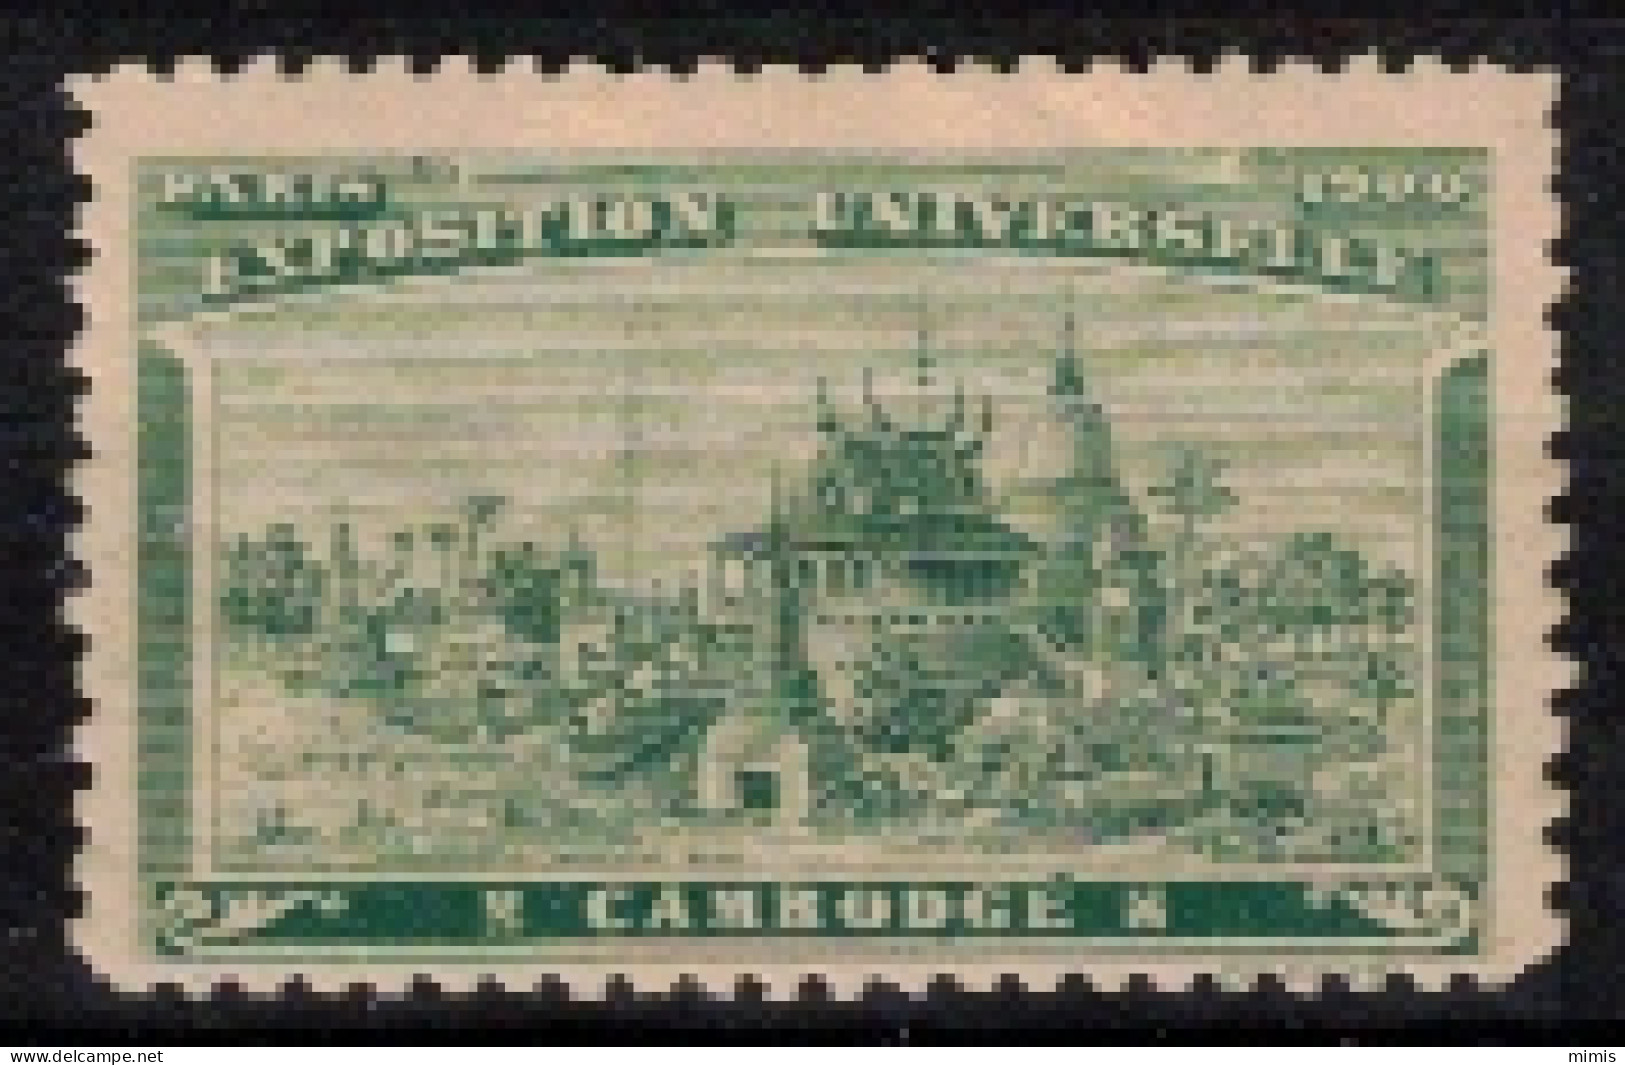 FRANCE     VIGNETTES      Exposition Universelle Paris 1900     Cambodge - Tourismus (Vignetten)